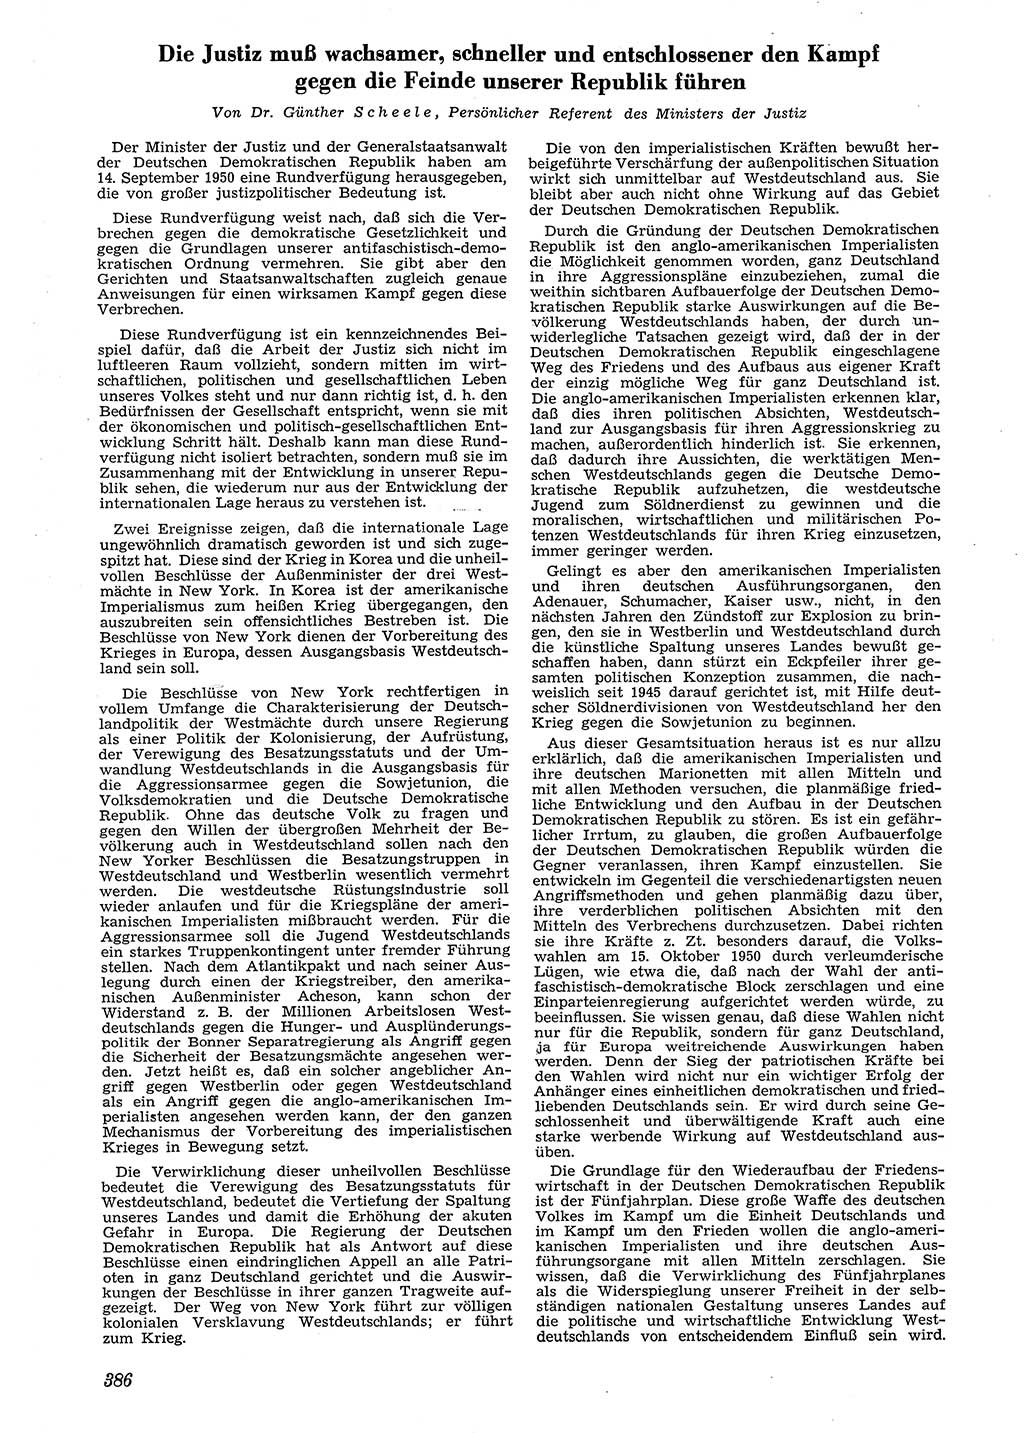 Neue Justiz (NJ), Zeitschrift für Recht und Rechtswissenschaft [Deutsche Demokratische Republik (DDR)], 4. Jahrgang 1950, Seite 386 (NJ DDR 1950, S. 386)